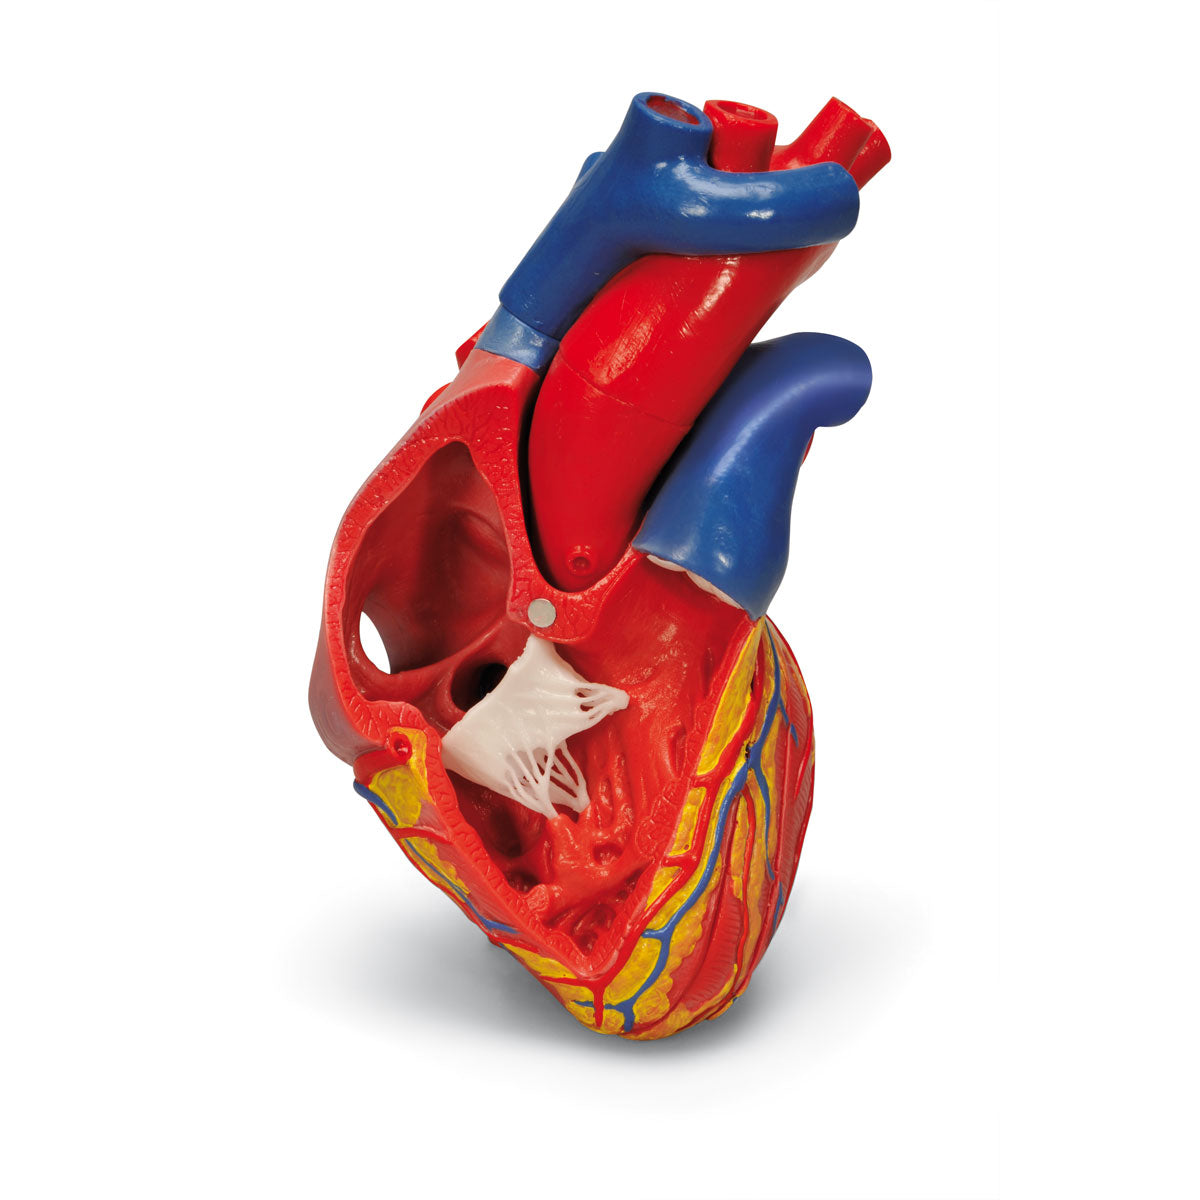 Hjertemodel med fokus på de 4 hjerteklapper og afstøbt efter et ægte hjerte